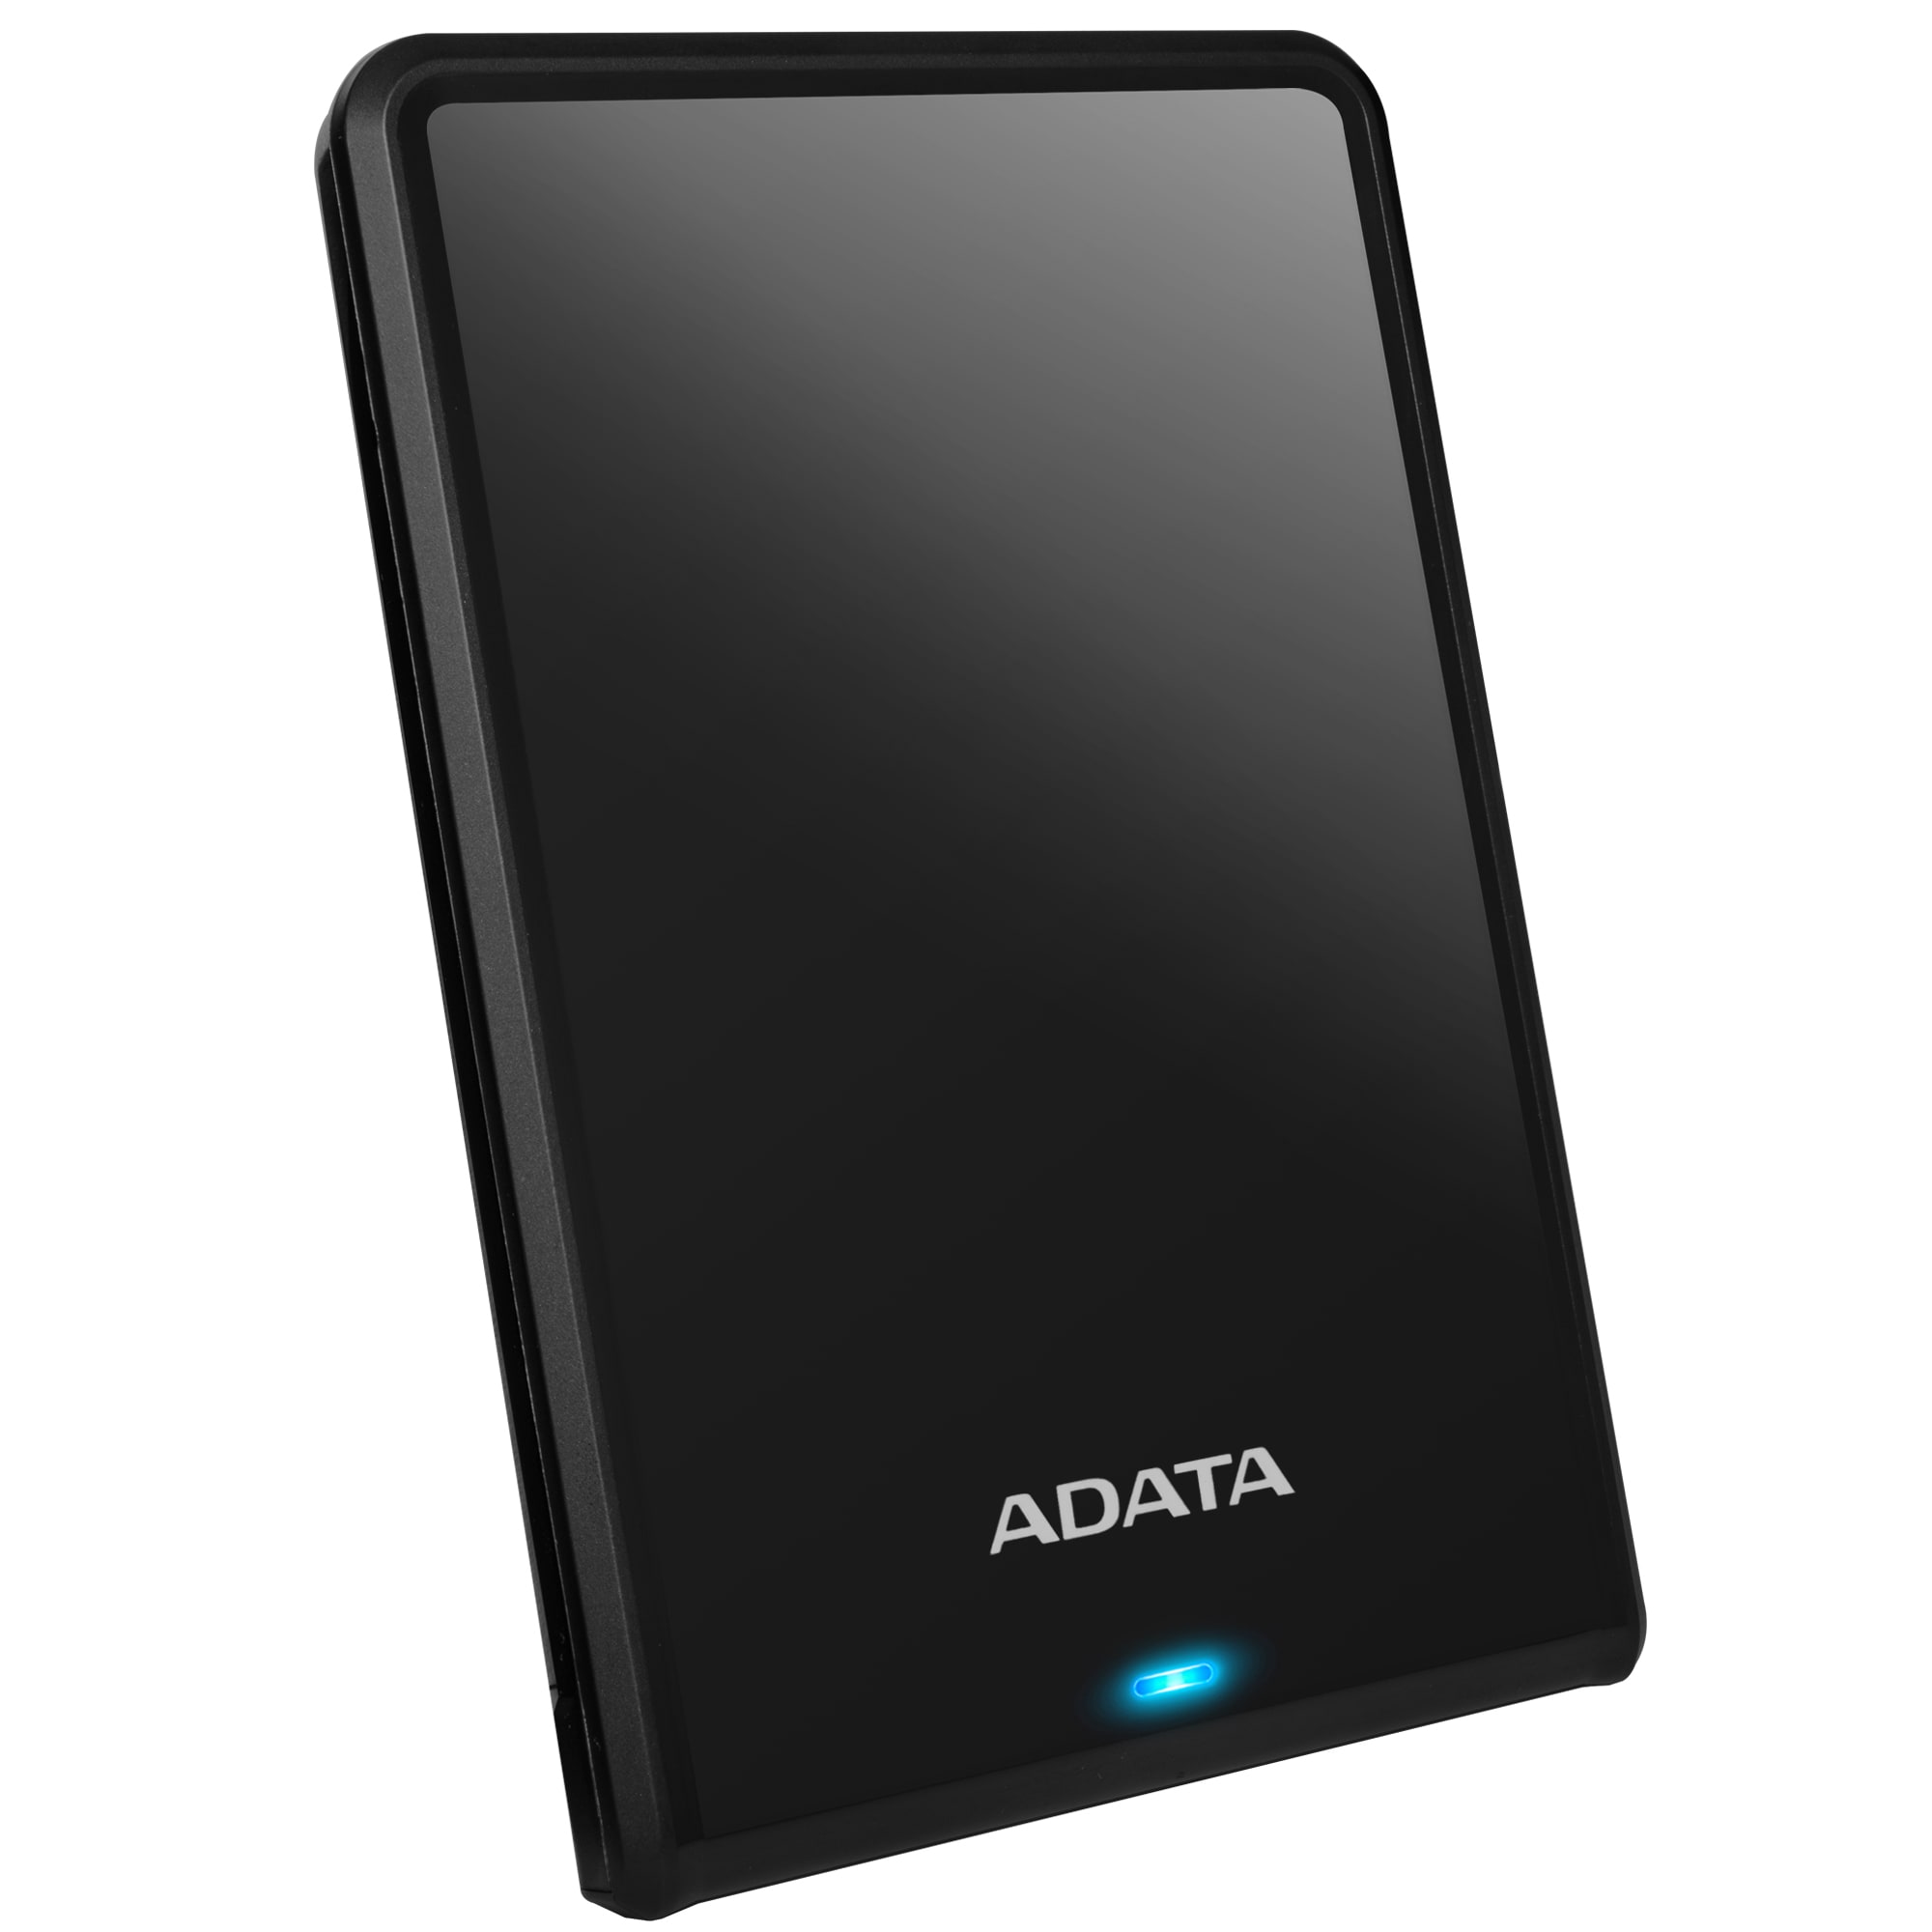 Disco Externo Portátil 4TB | ADATA HV620S 2.5'' | Ultradelgado, Sensor de Protección para caídas, Interfaz USB 3.0 (Compatible con USB 2.0), Velocidad de transferencia de hasta 90 MB/s en lectura y escritura, Colores Disponibles (Negro, Azul, Blanco)